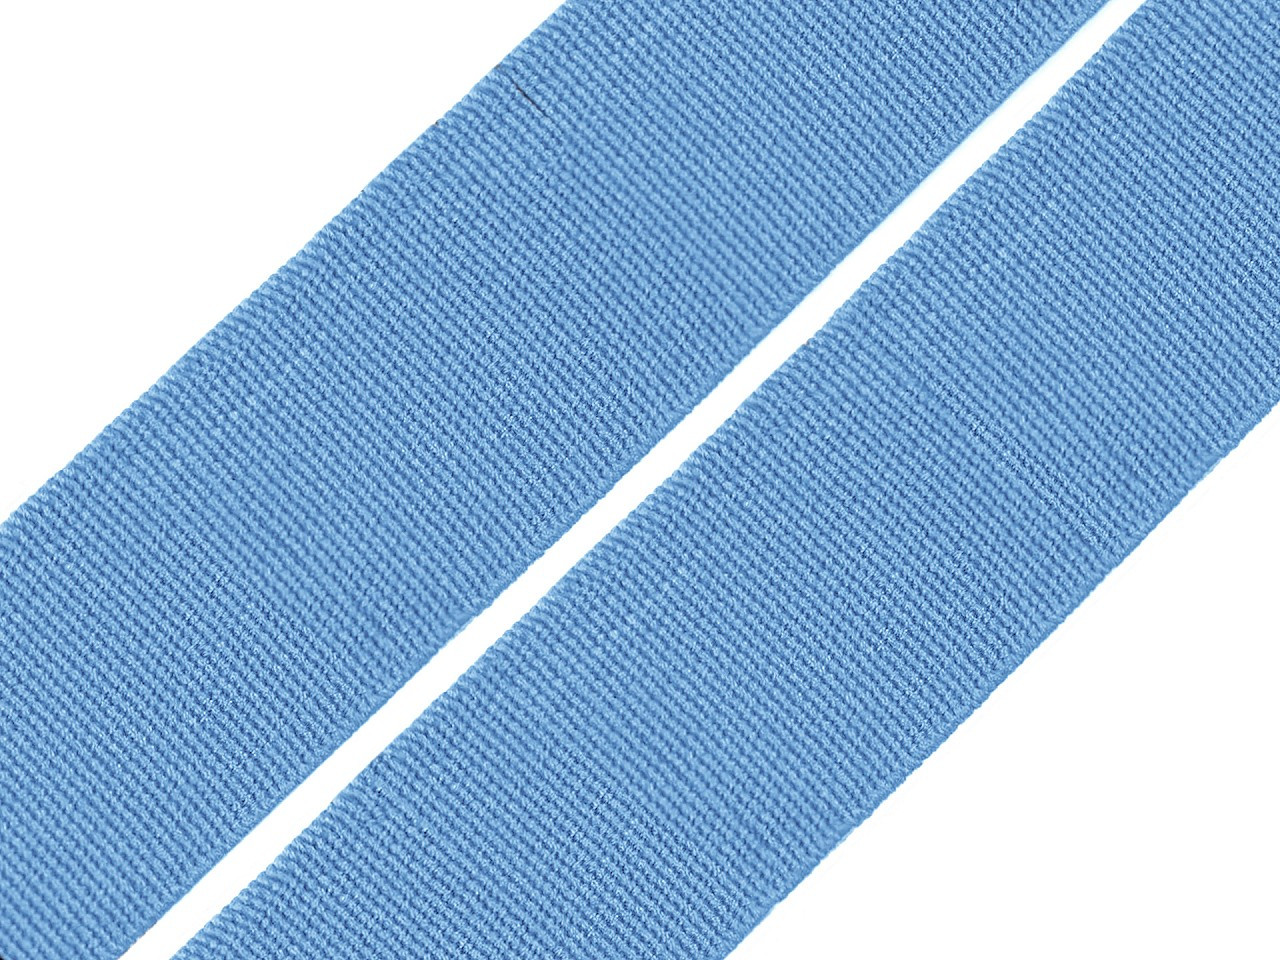 Pruženka hladká šíře 20 mm tkaná barevná, barva 4703 modrá chrpová